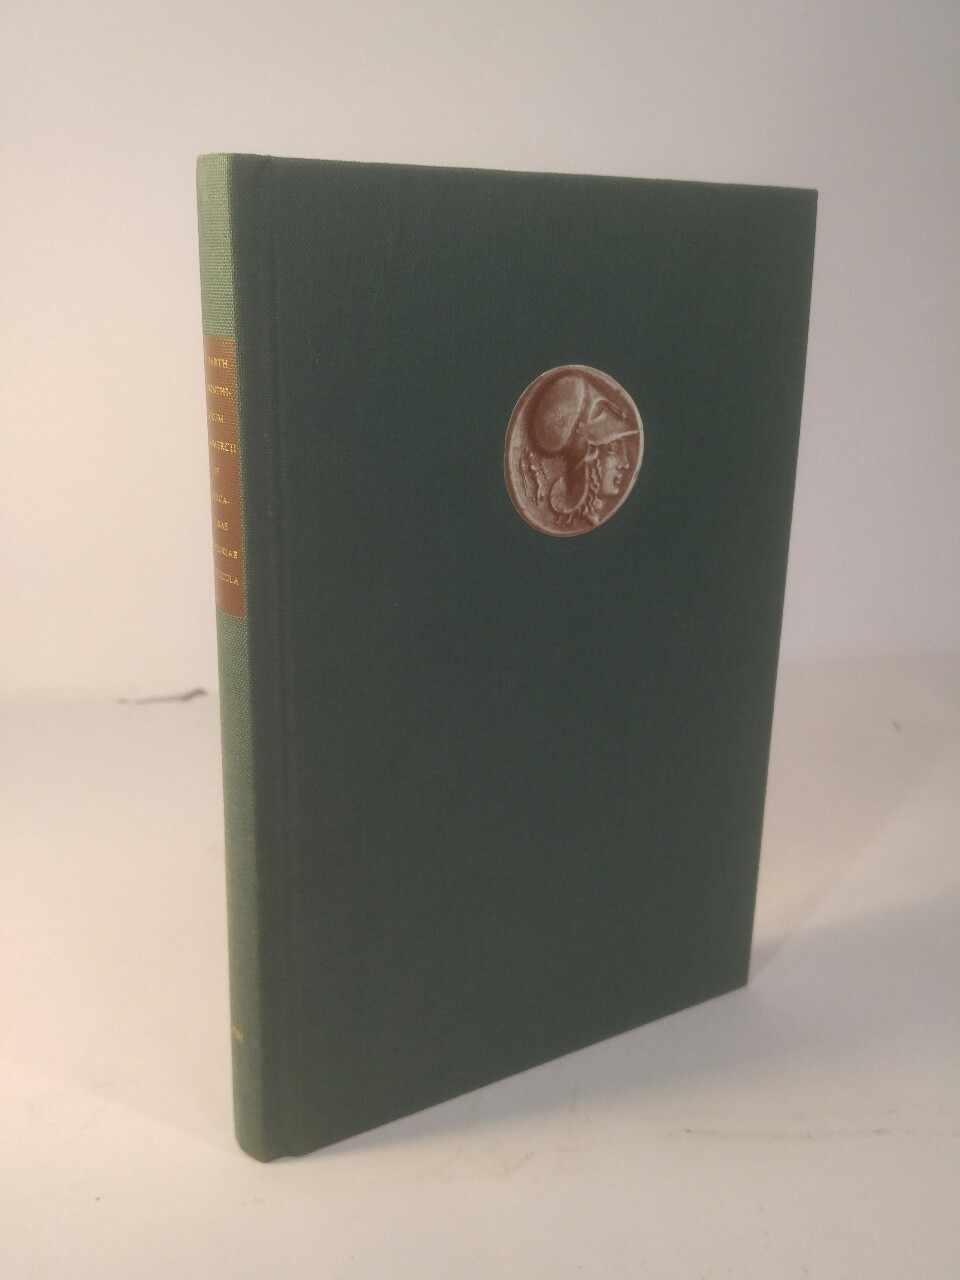 Corinthiorum commercii et mercaturae historiae particula In deutscher und englischer Übersetzung - Barth, Heinrich